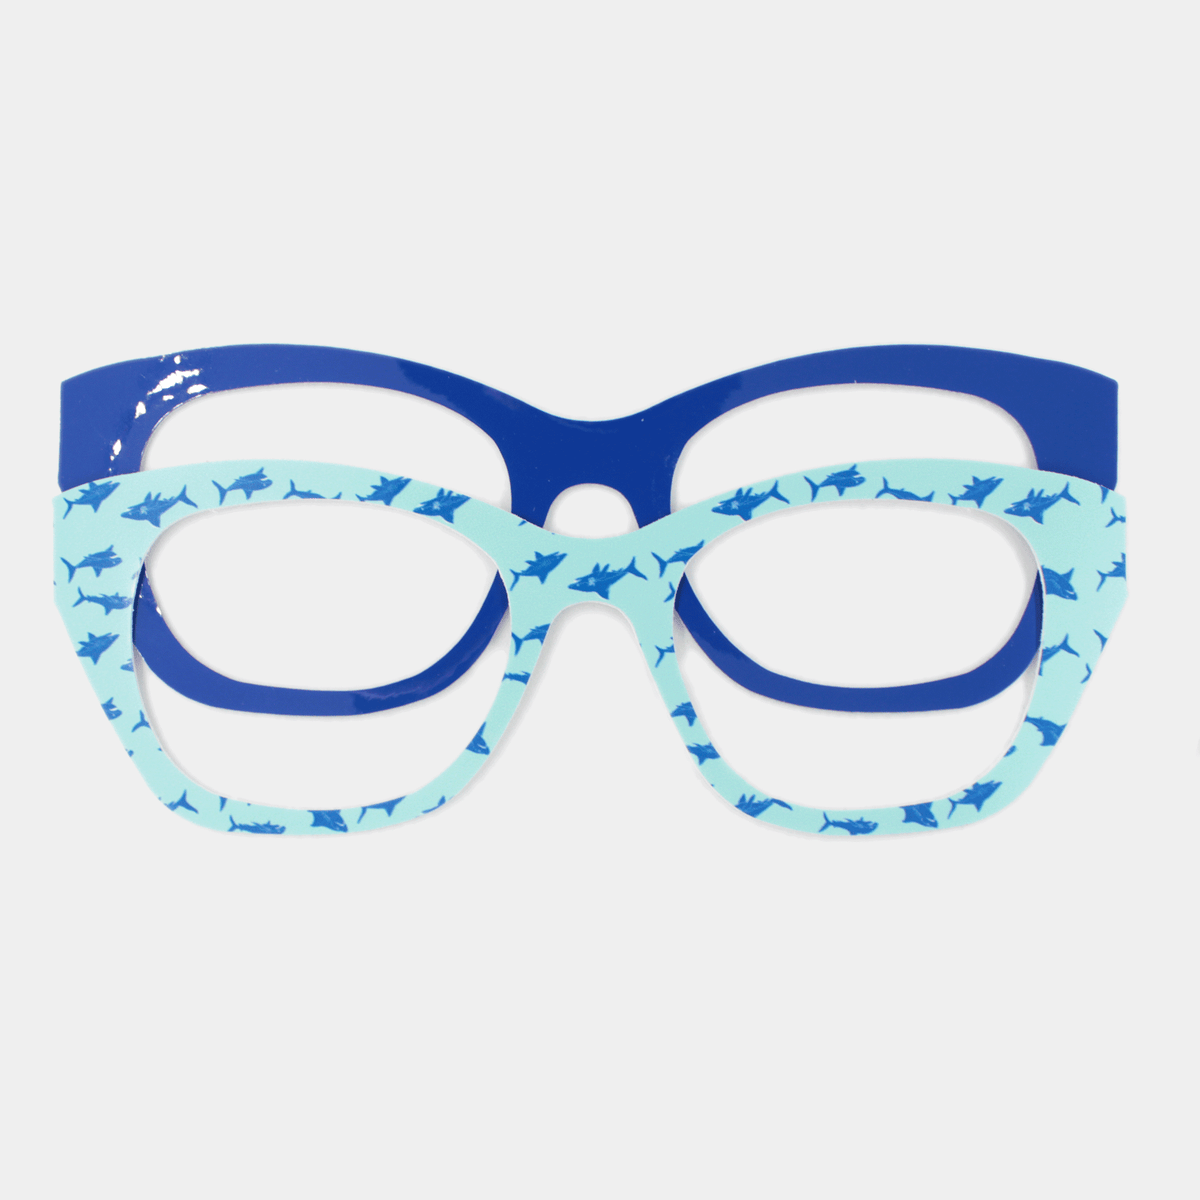 Weslyn Sunglasses + Two Eyewear Stickers